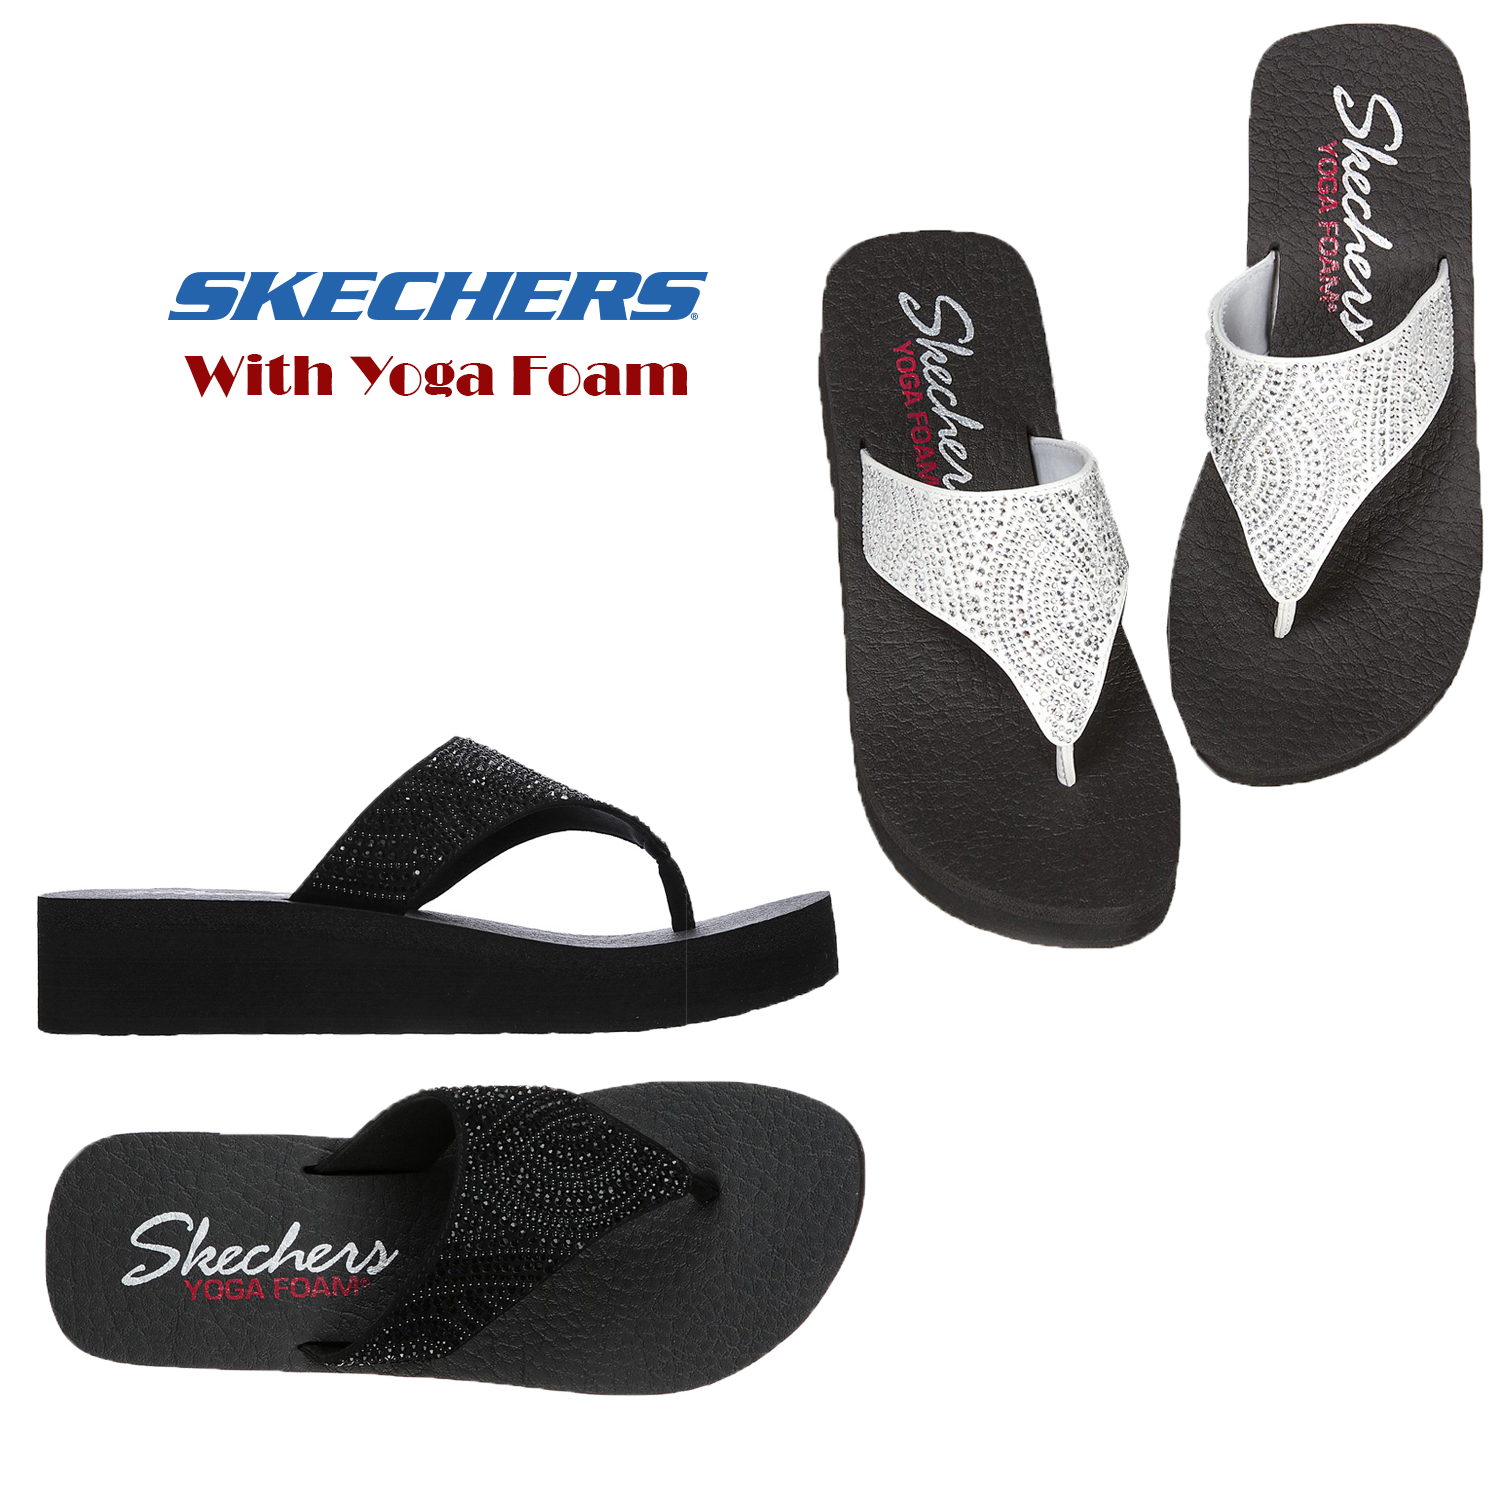 skechers embellished flip flops